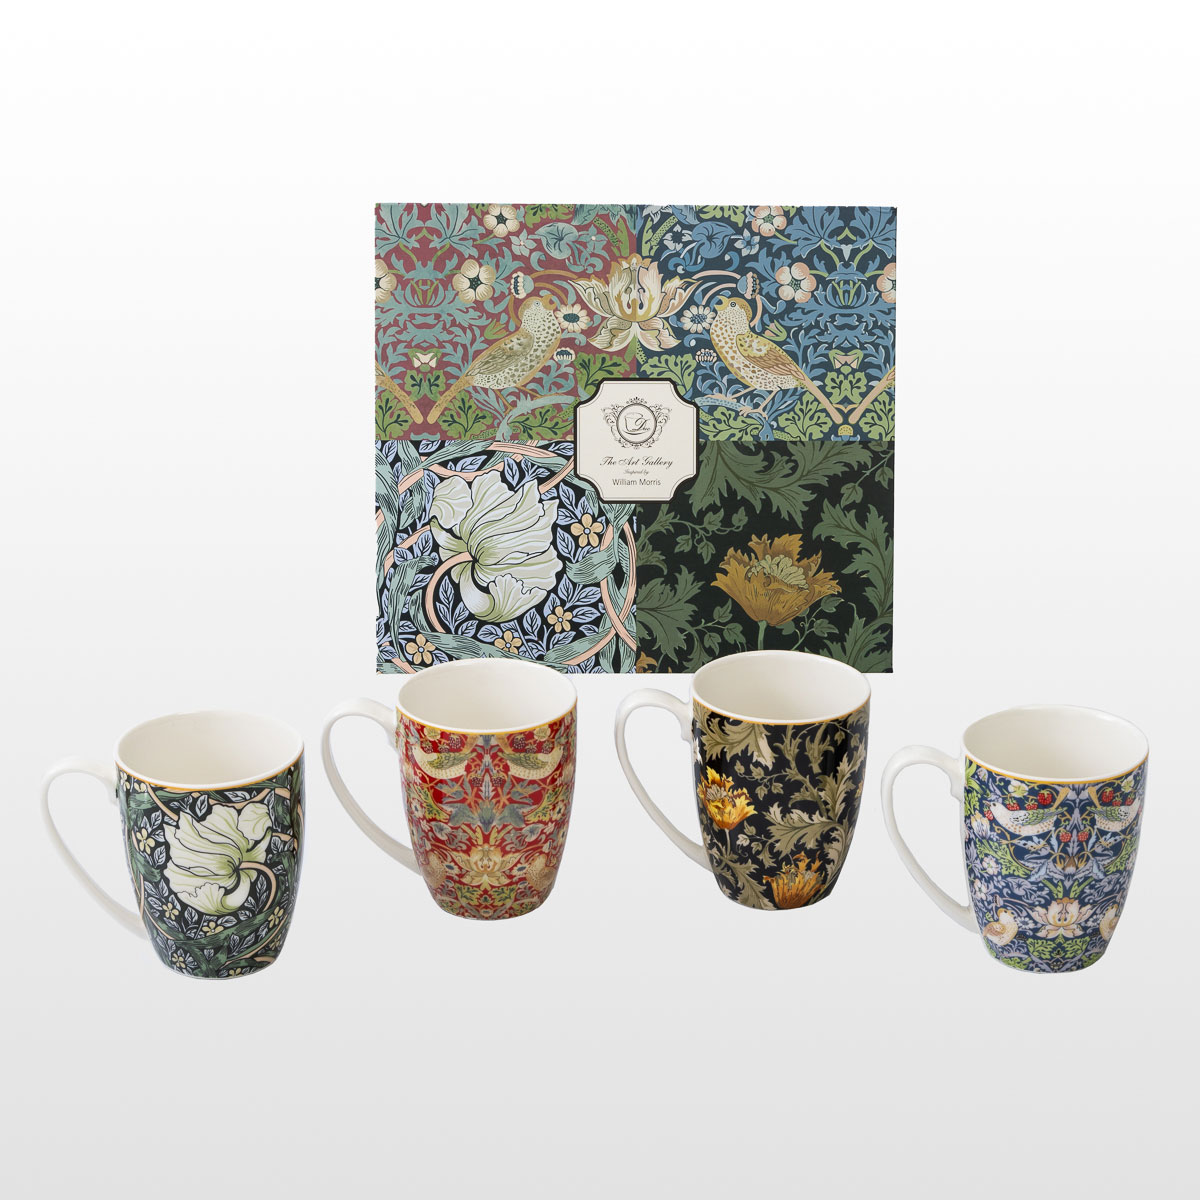 4 tazze William Morris (in una scatola regalo), dettaglio n°1